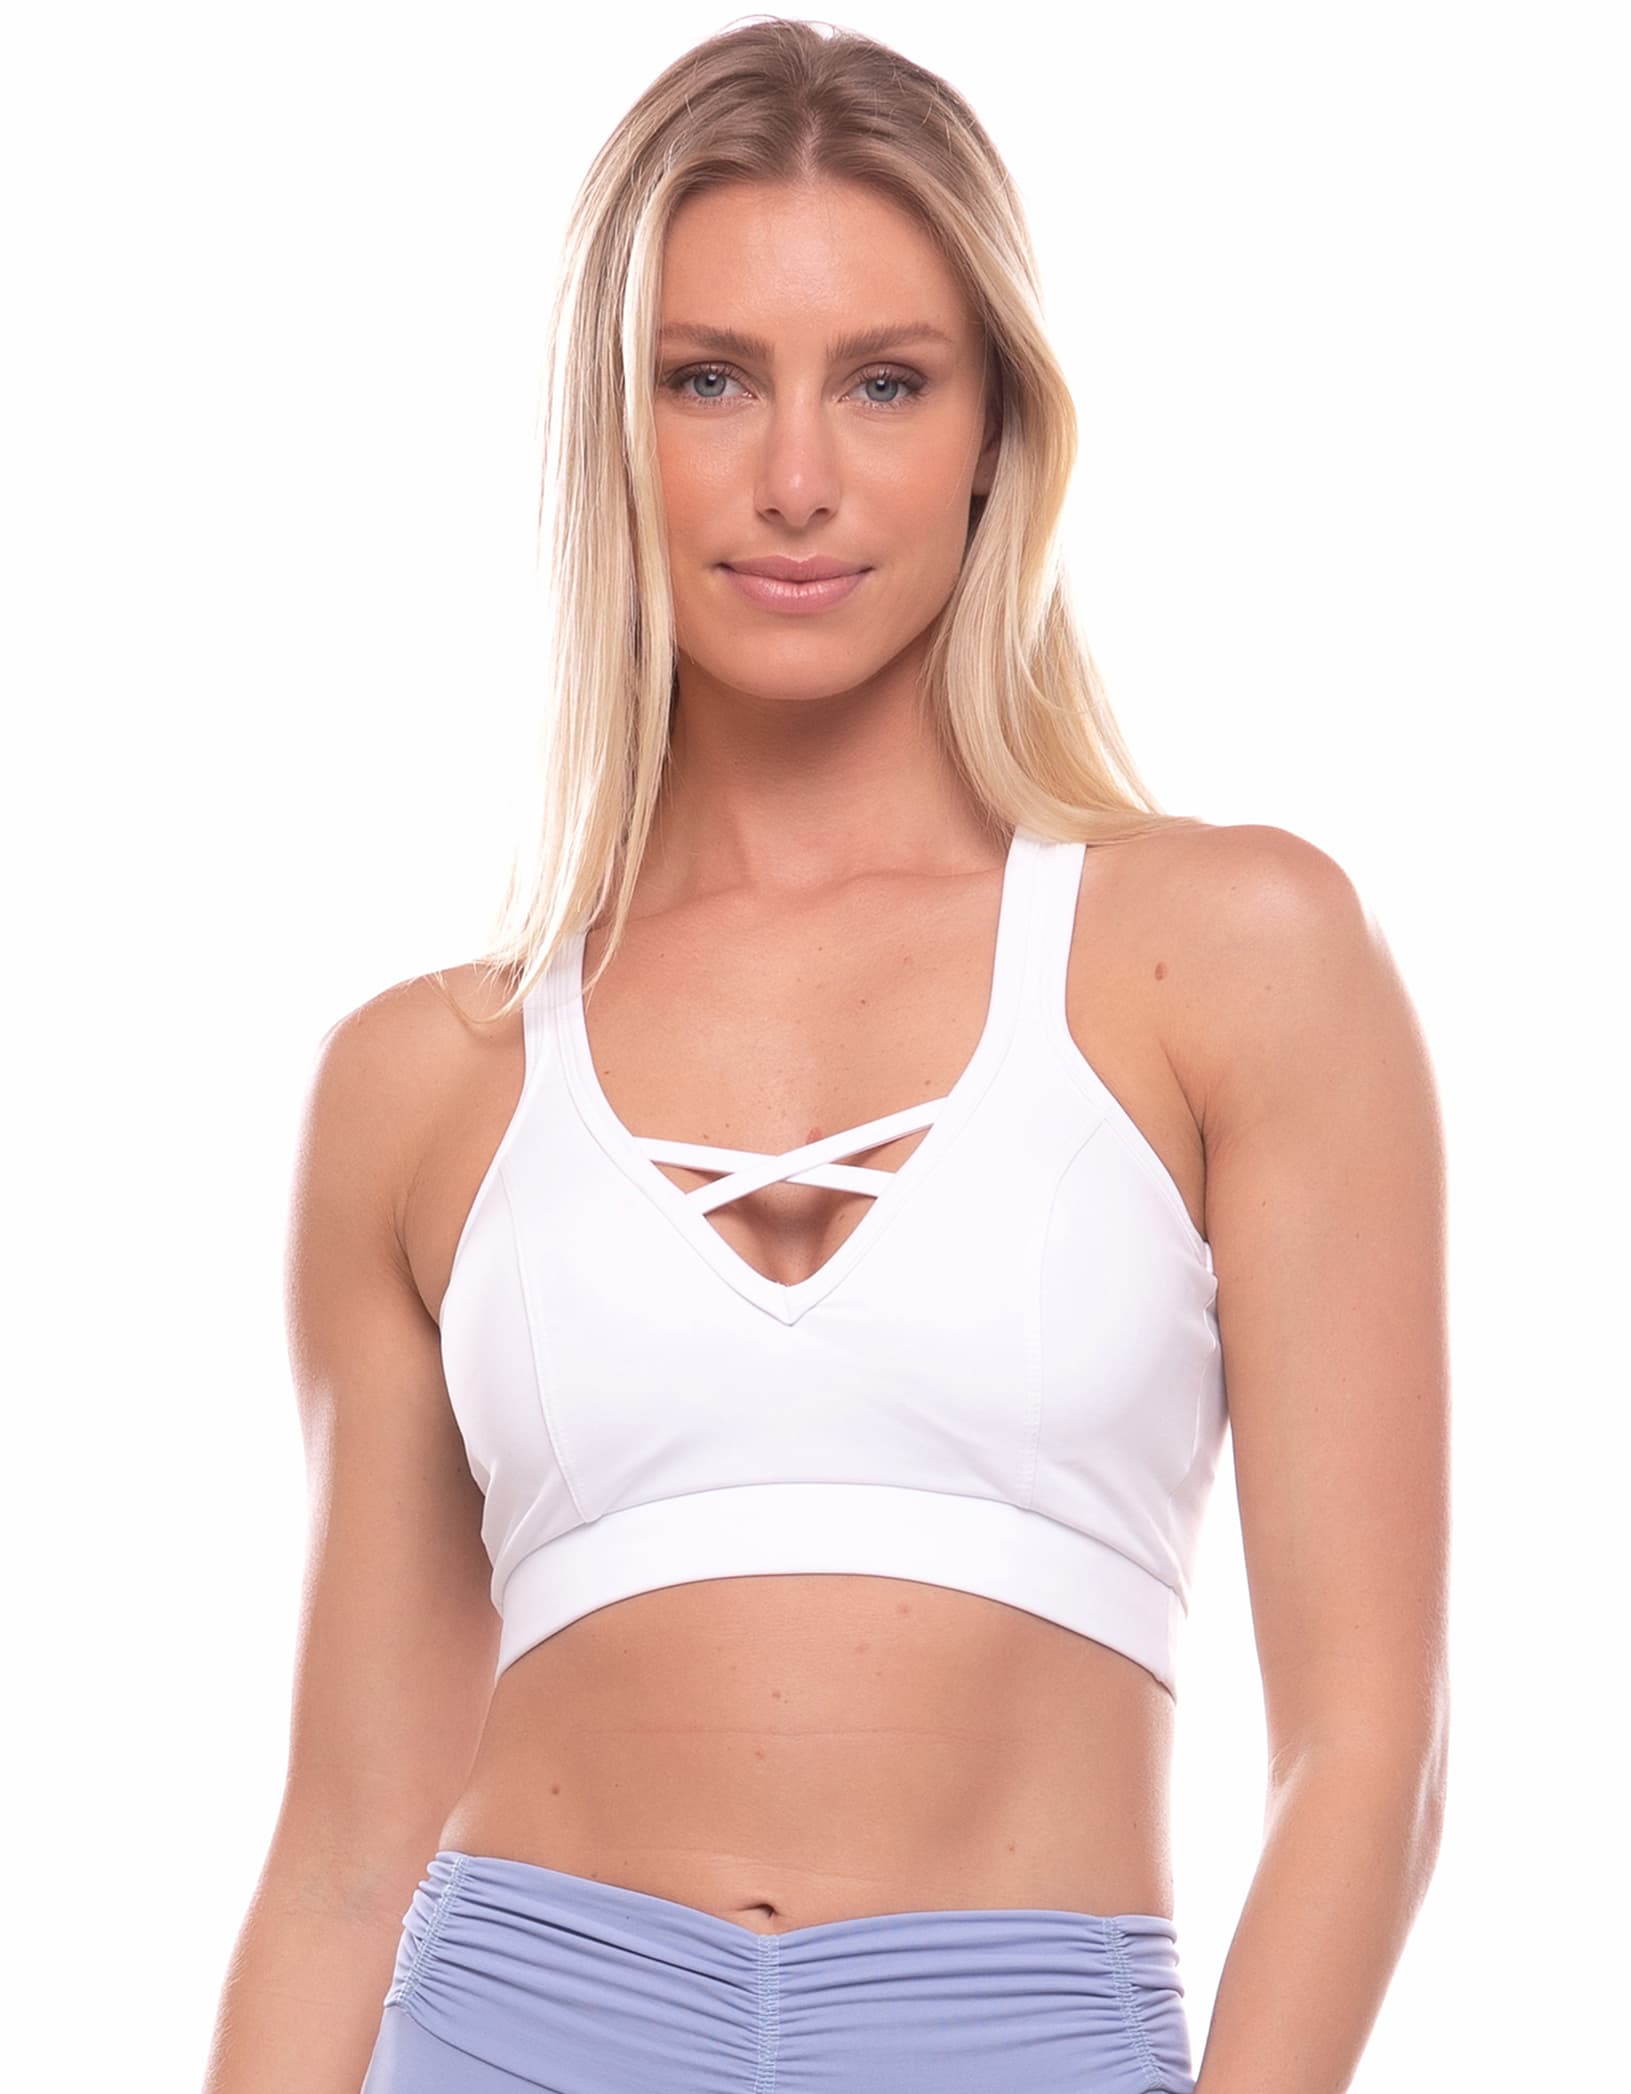 Vestem - Sports bra Exotic White - TOP515C0001